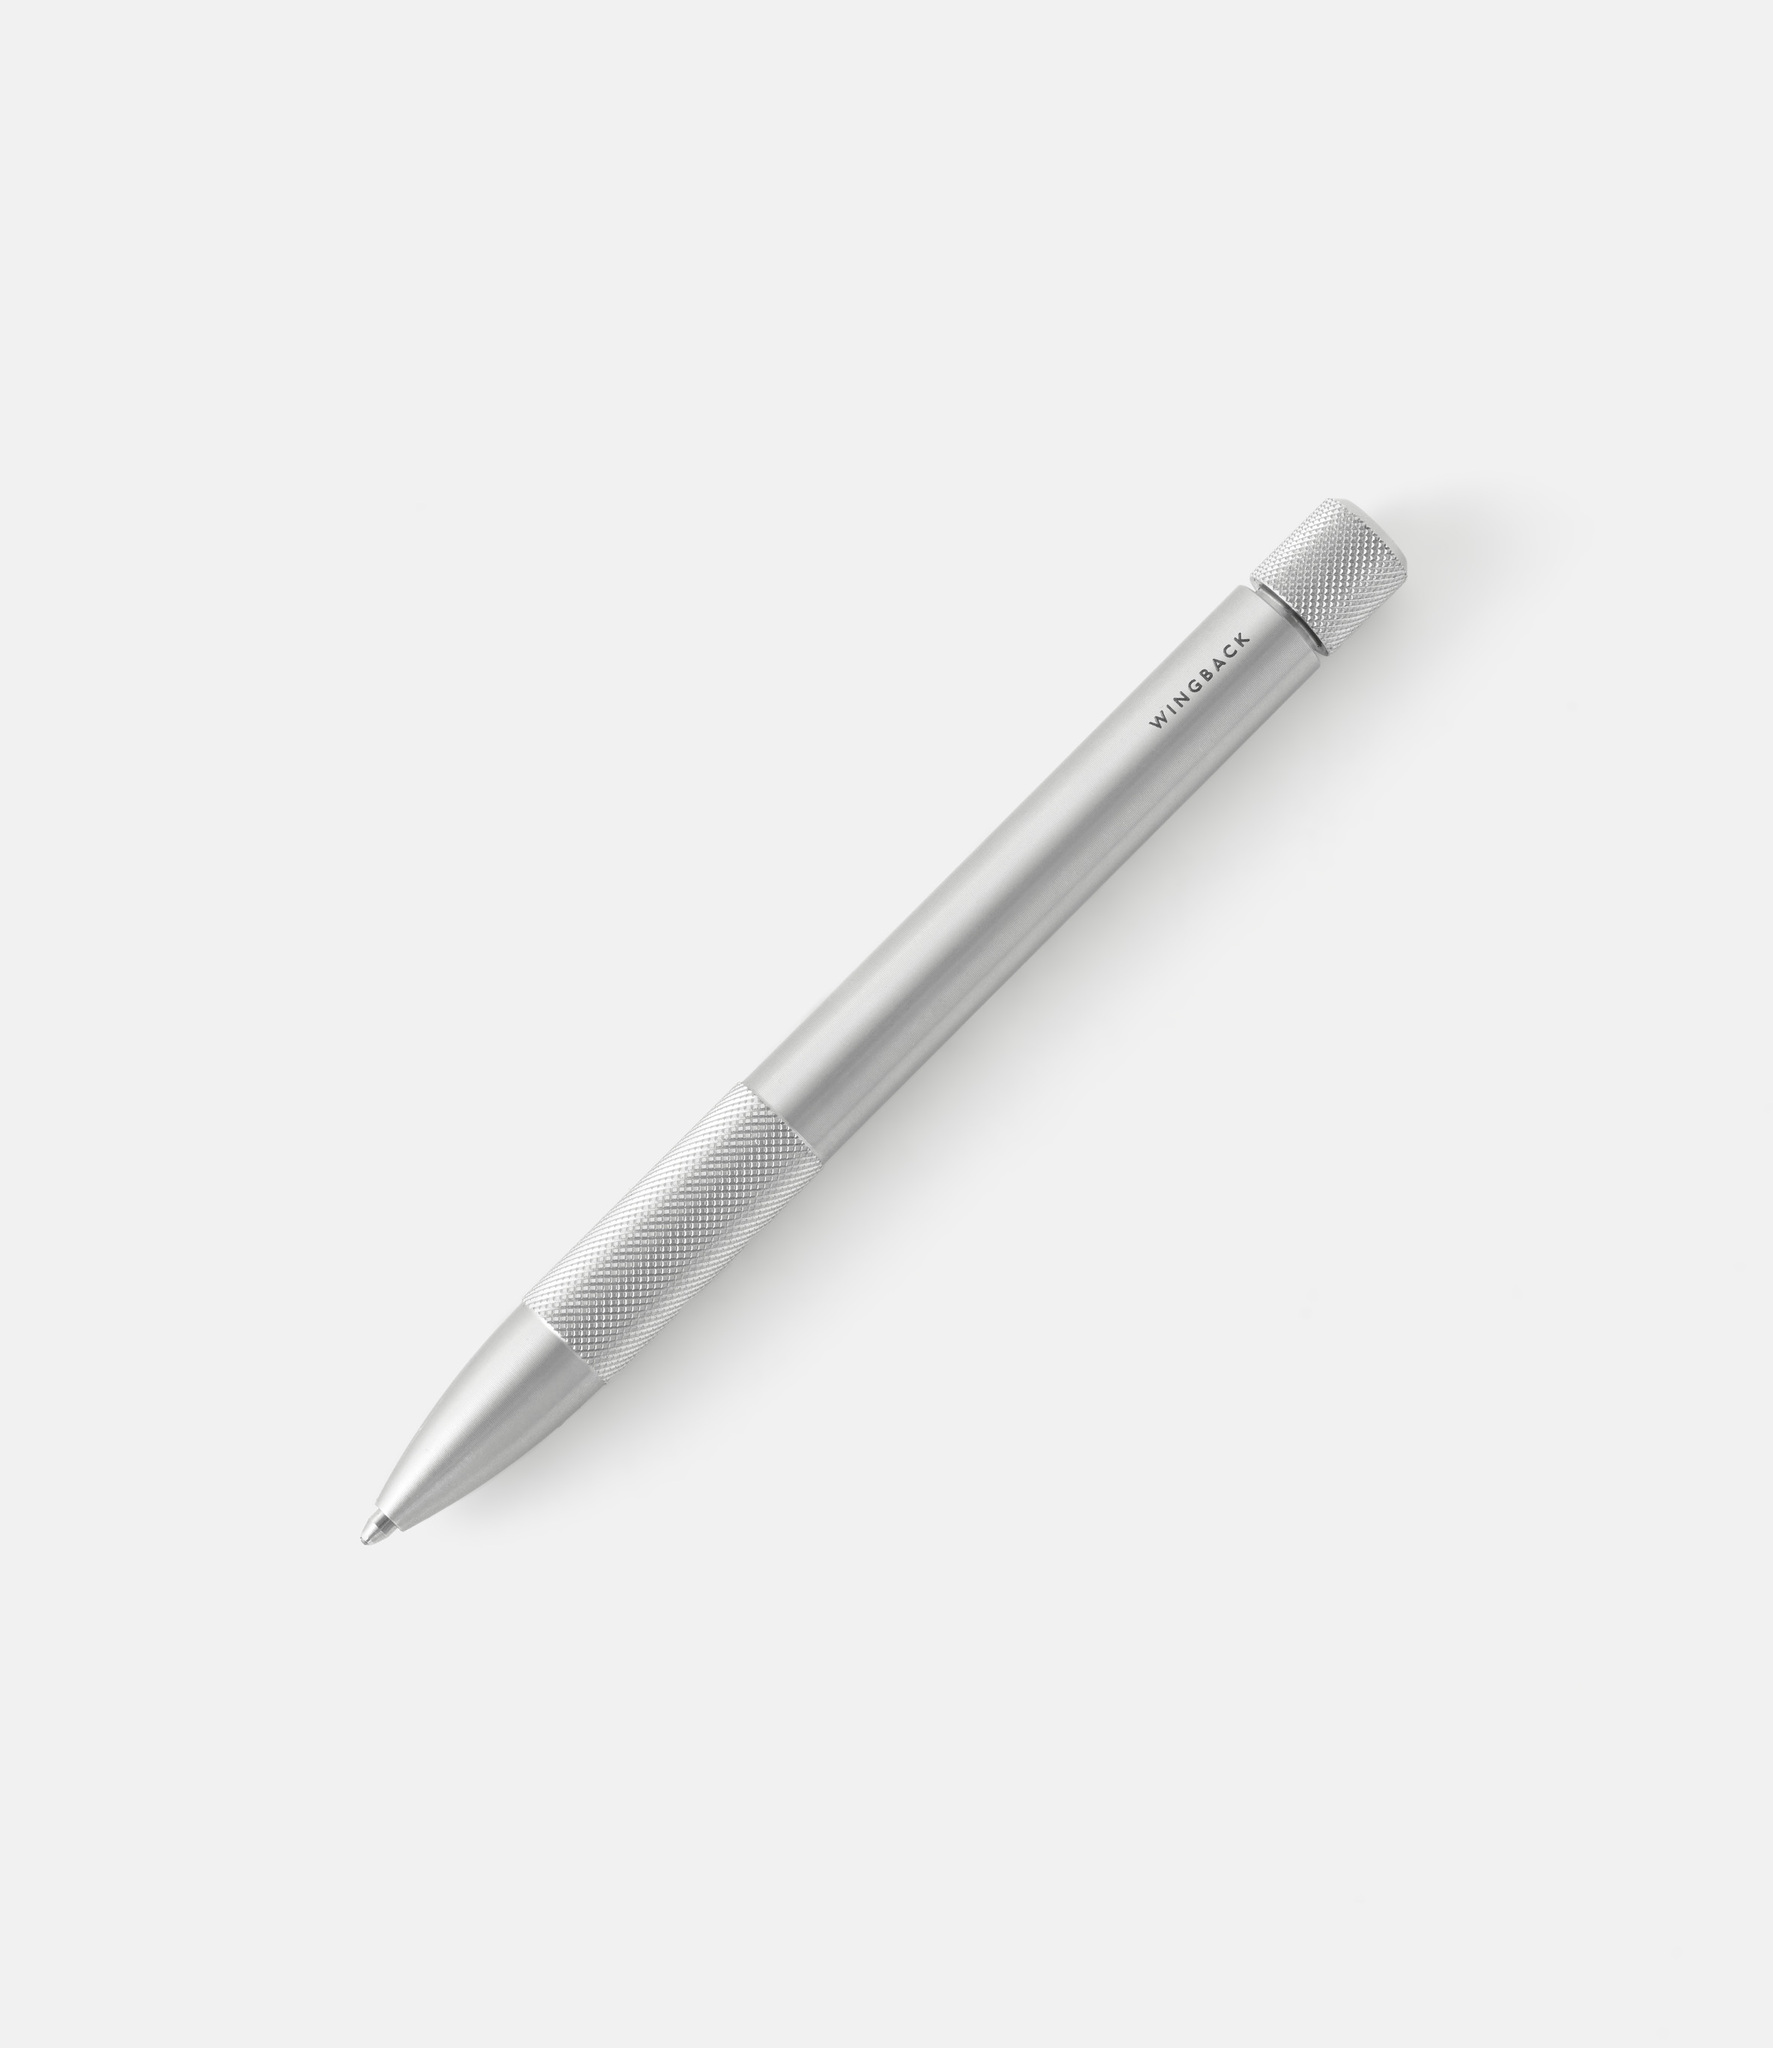 Wingback Mechanical Pen — ручка из стали